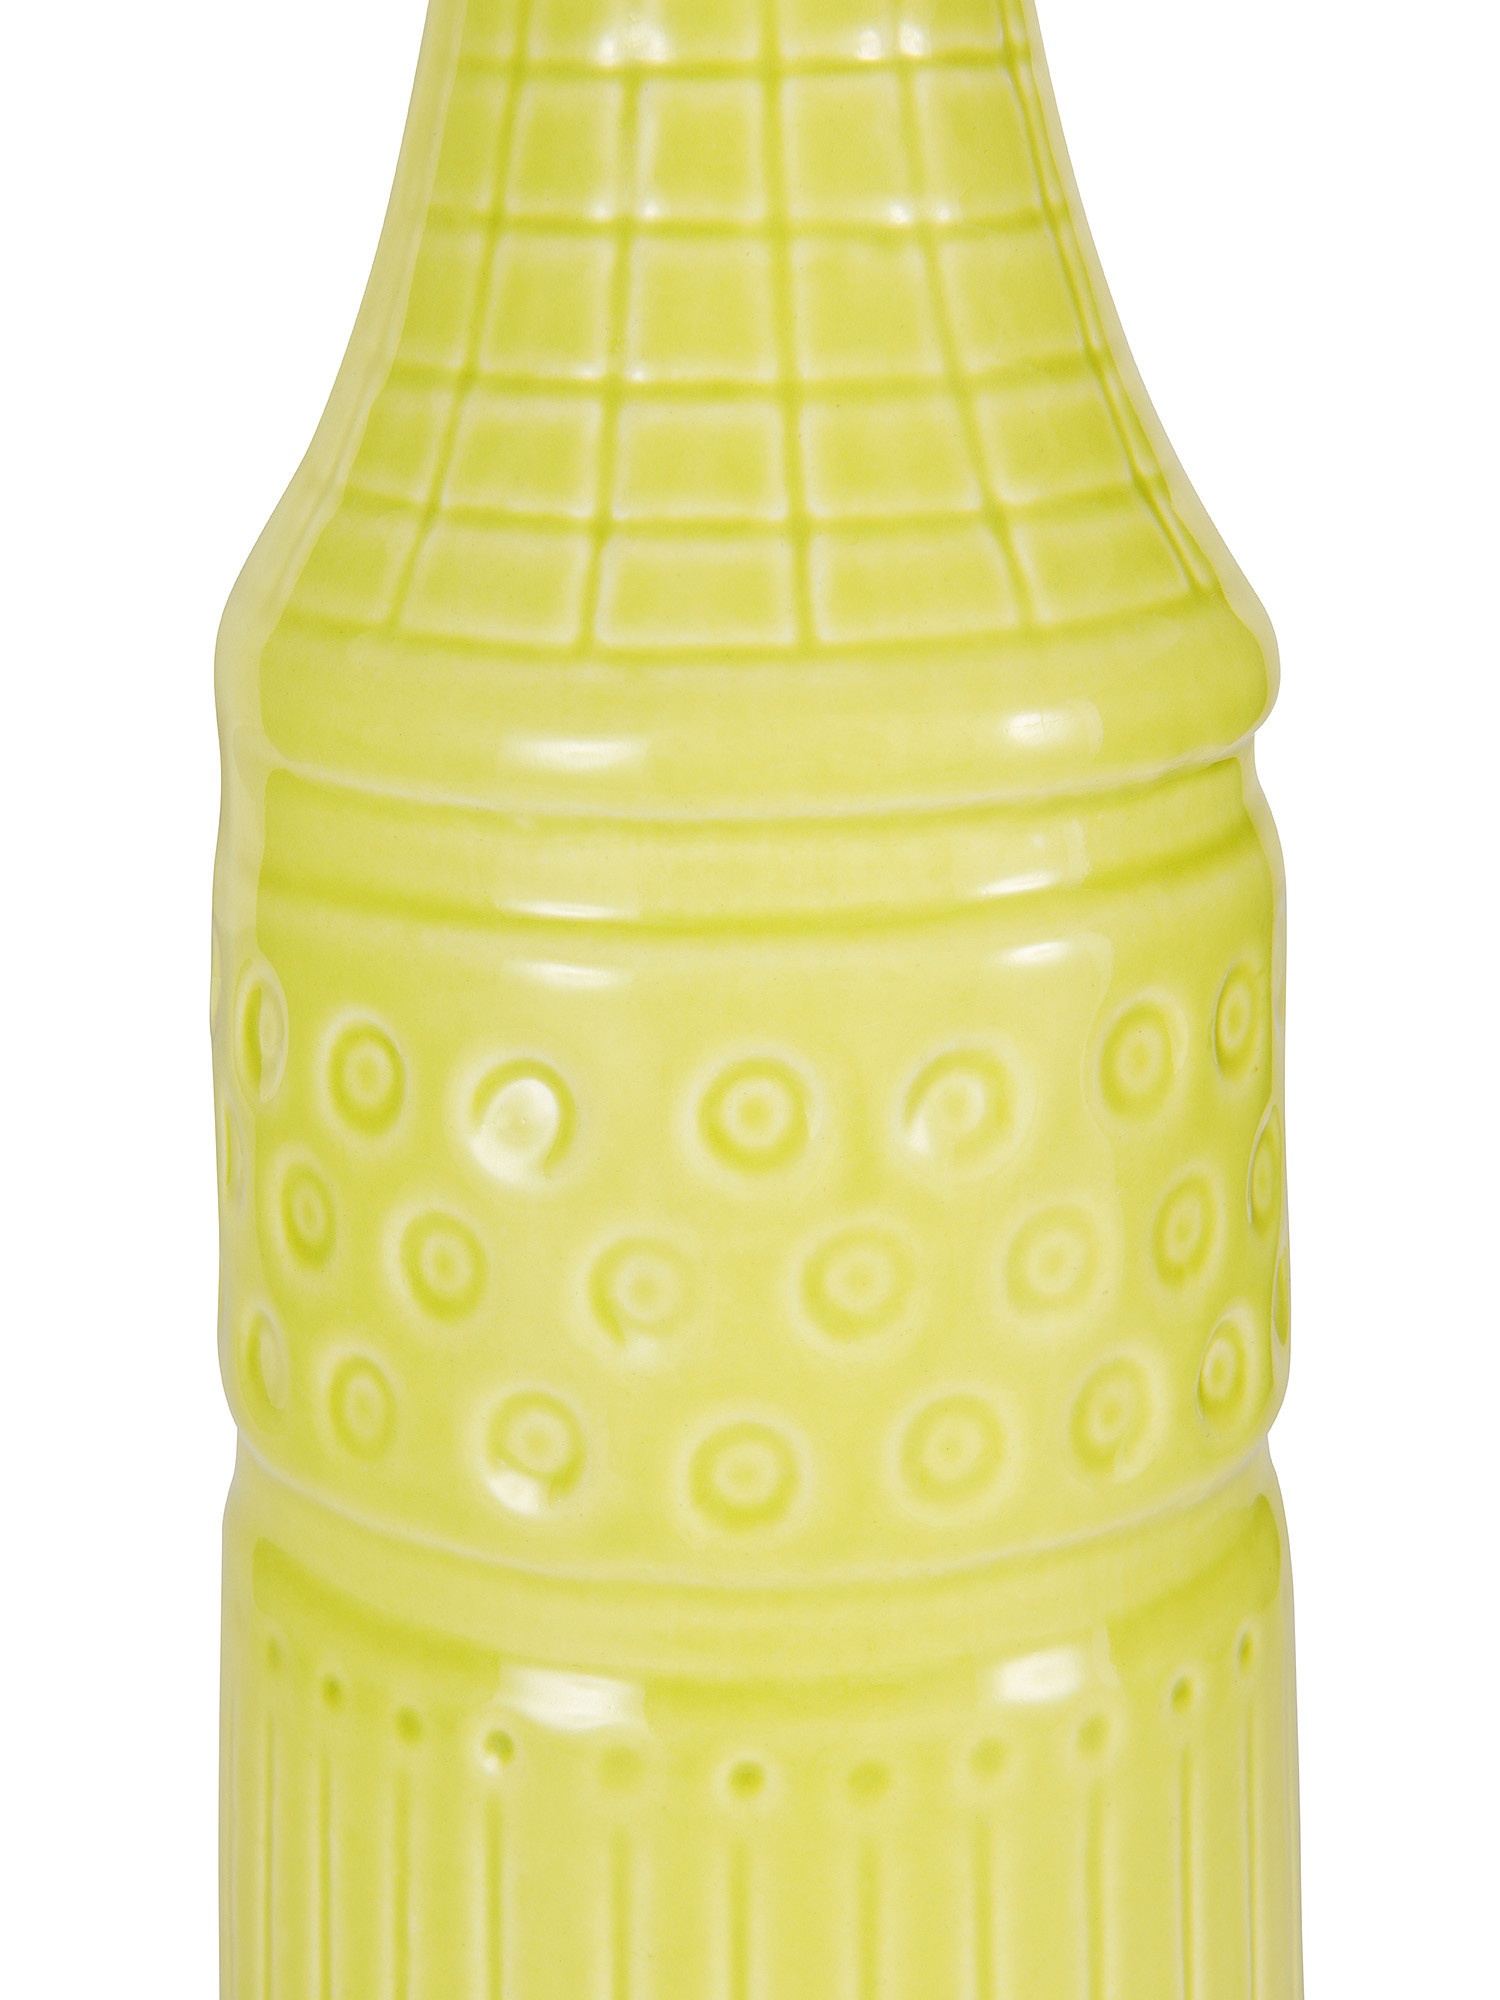 Bottiglia decorativa ceramica artigianale portoghese, Verde, large image number 1